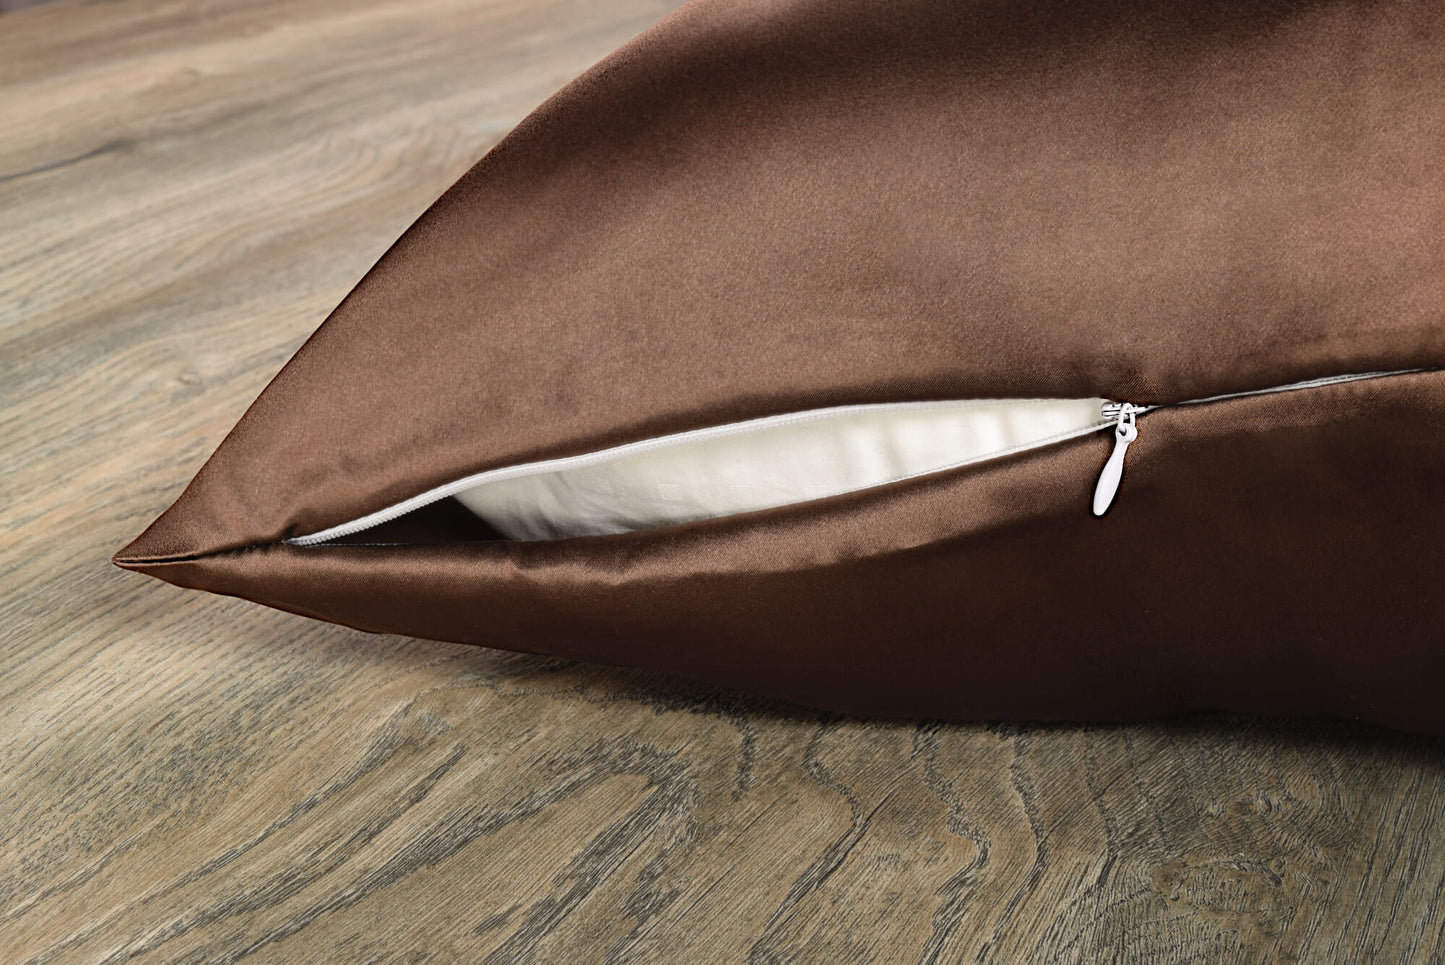 Celestial Silk chocolate silk pillowcase with hidden zipper